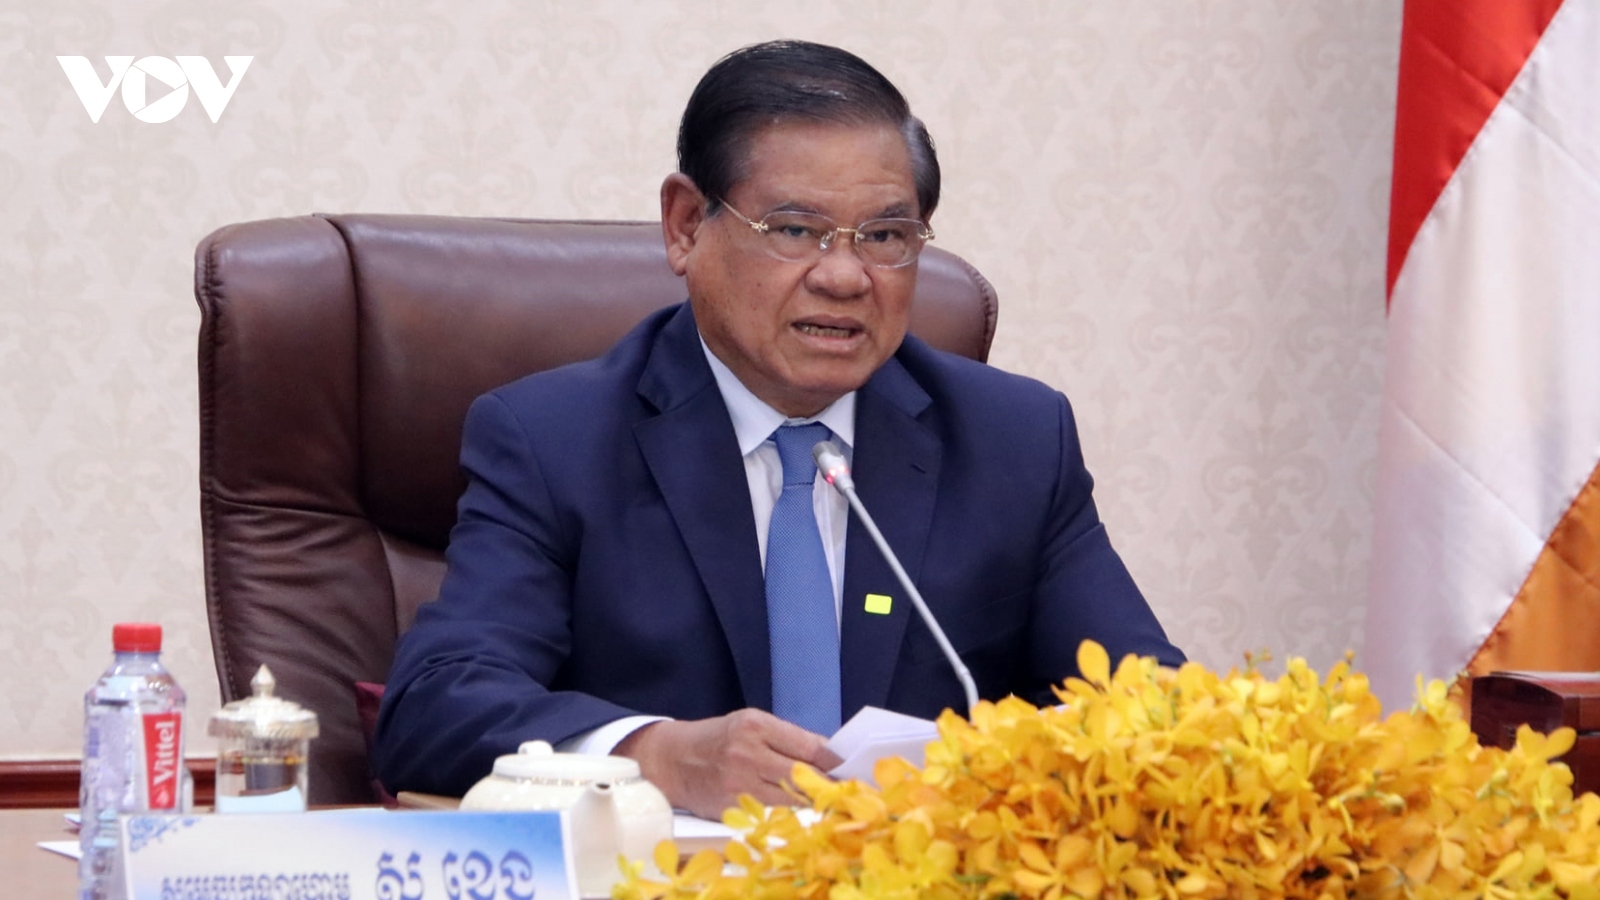 Campuchia yêu cầu các tỉnh giáp biên hợp tác chặt với Việt Nam để phòng dịch